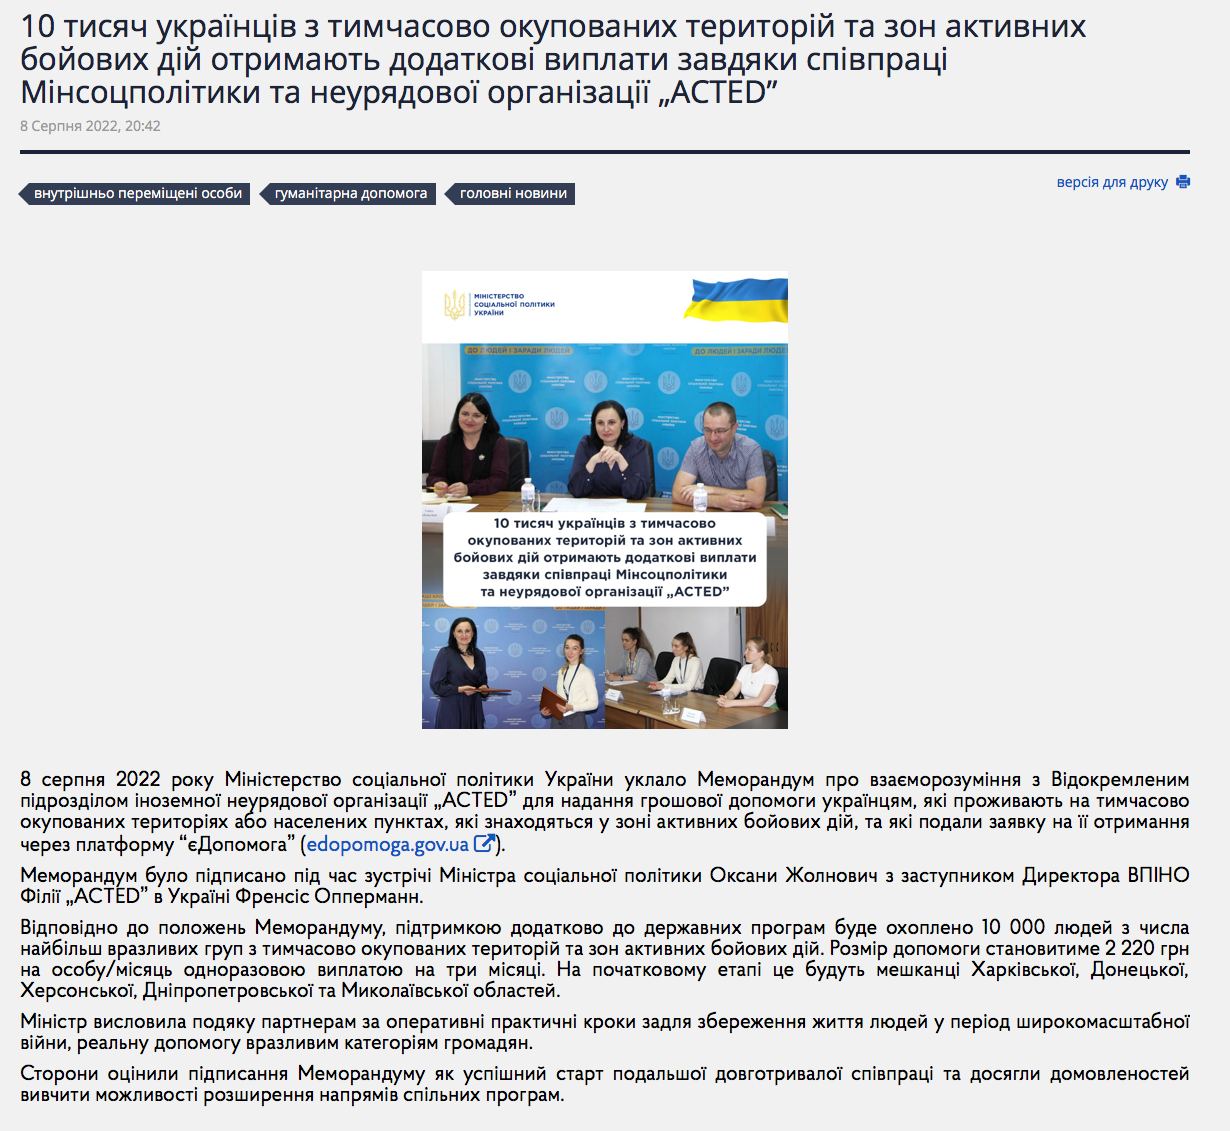 Украинцы в оккупации и зоне боевых действий могут получить дополнительную выплату в 2220 грн на человека